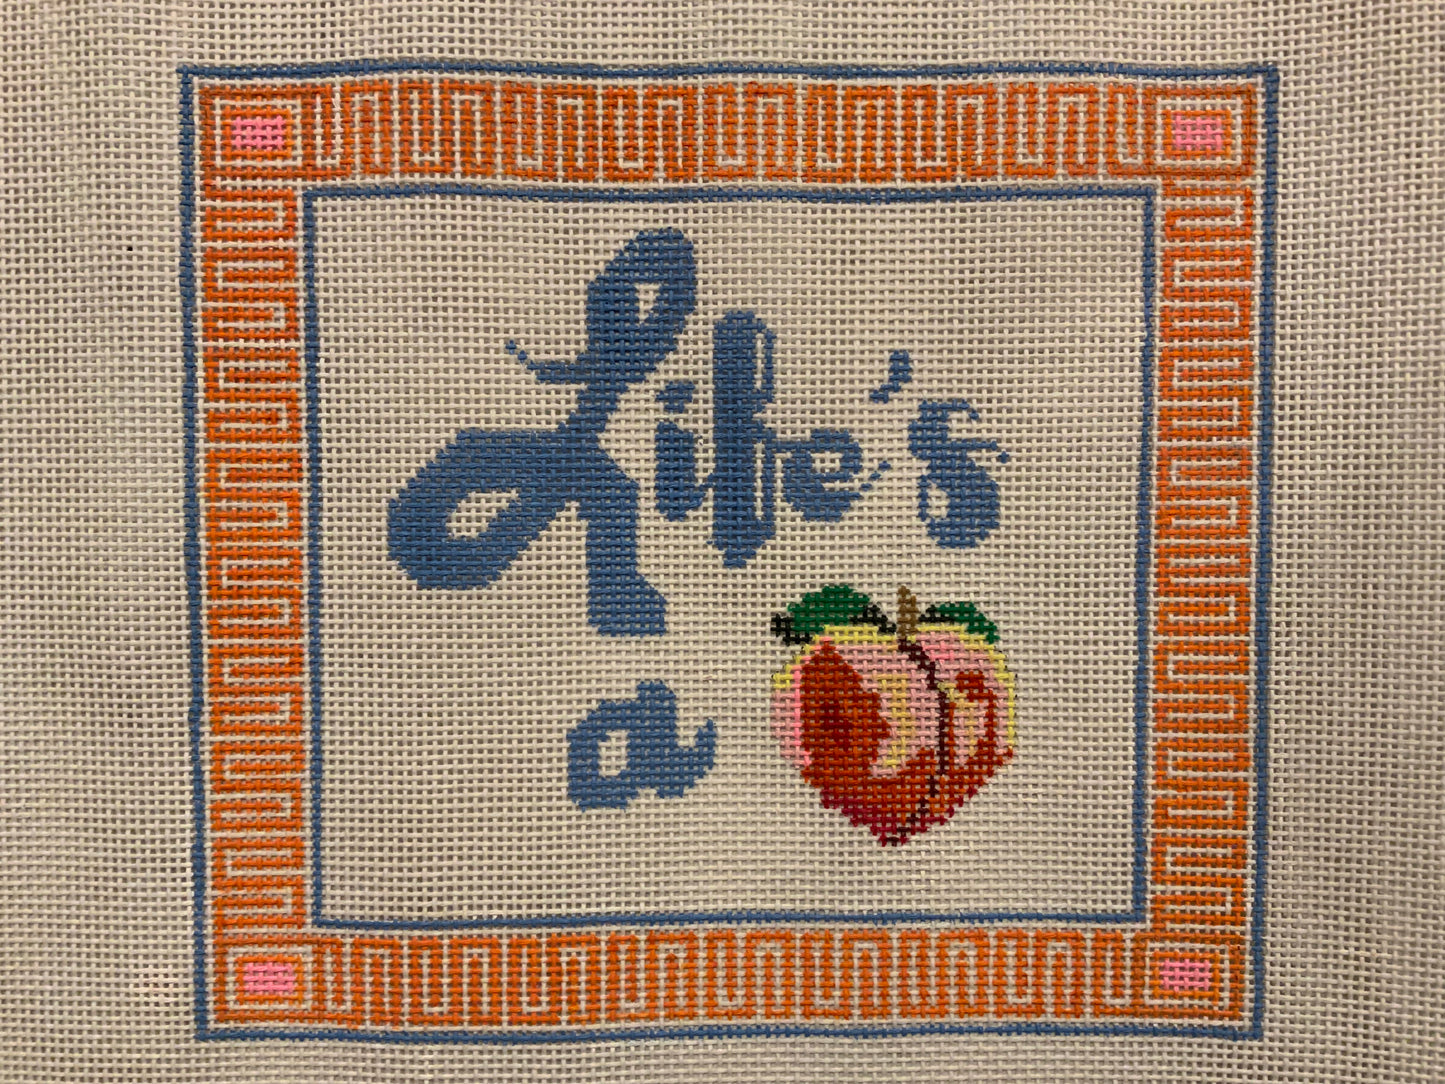 Life’s A Peach Needlepoint Canvas